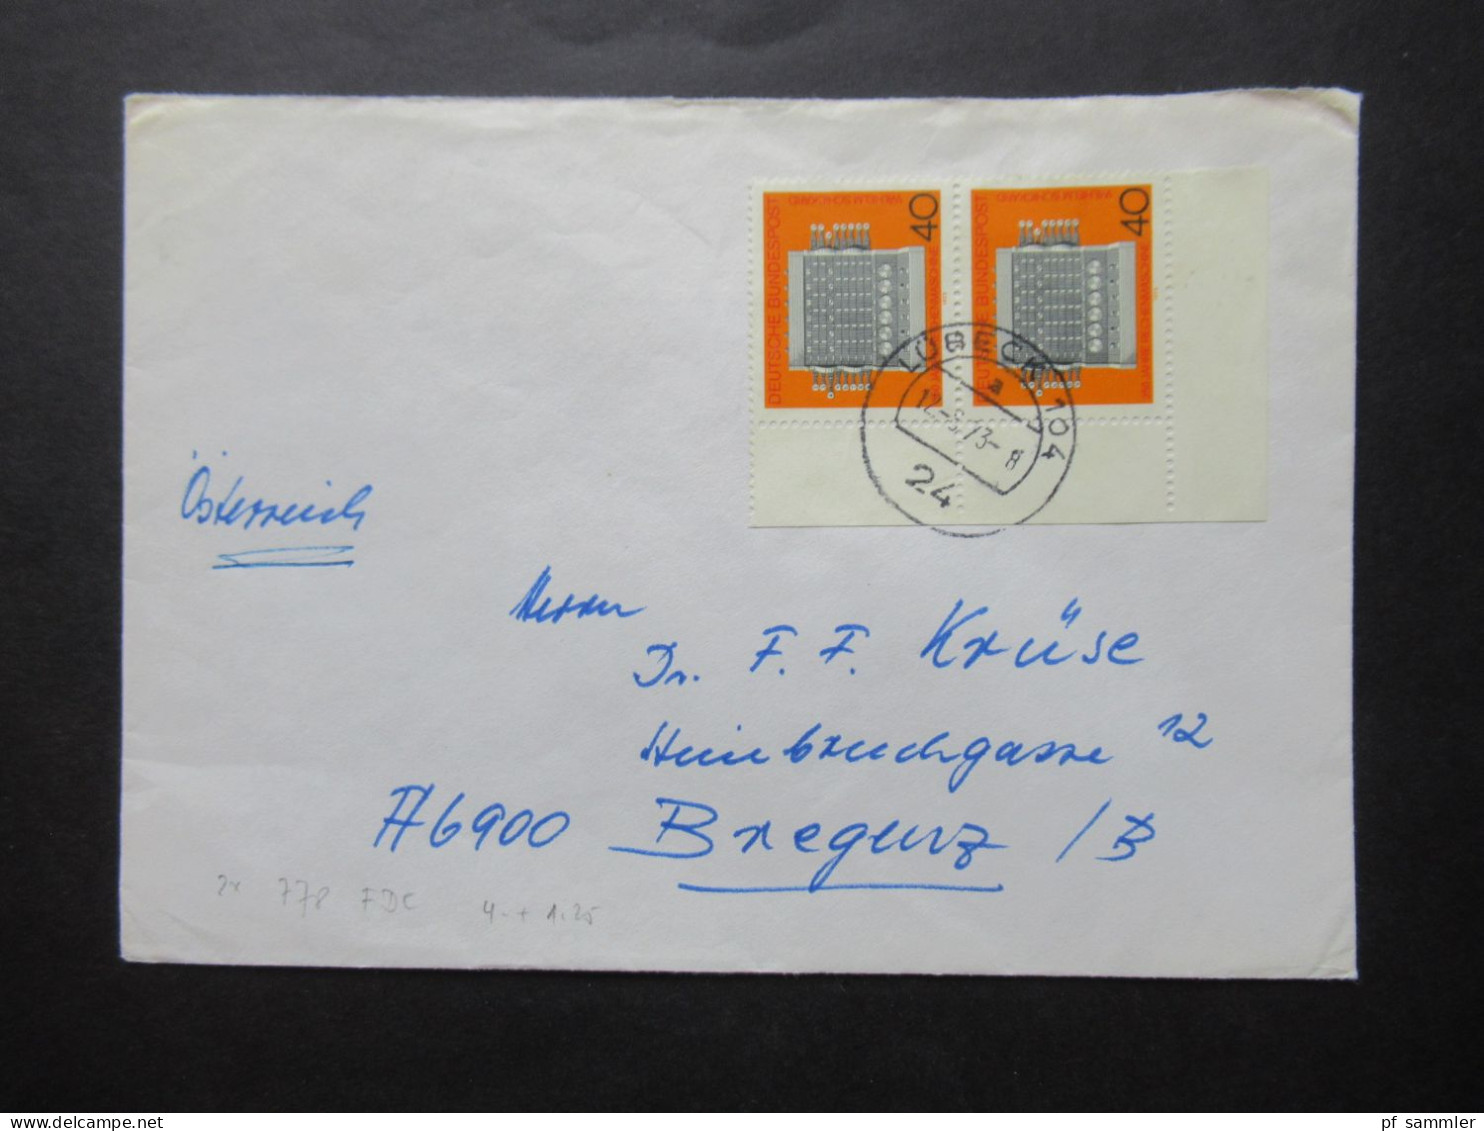 BRD / Berlin 1956 - 1960er Belegeposten 32 Stk. nur EF / MeF mit Randstücken / Eckränder! Auslandsbriefe nach Österreich